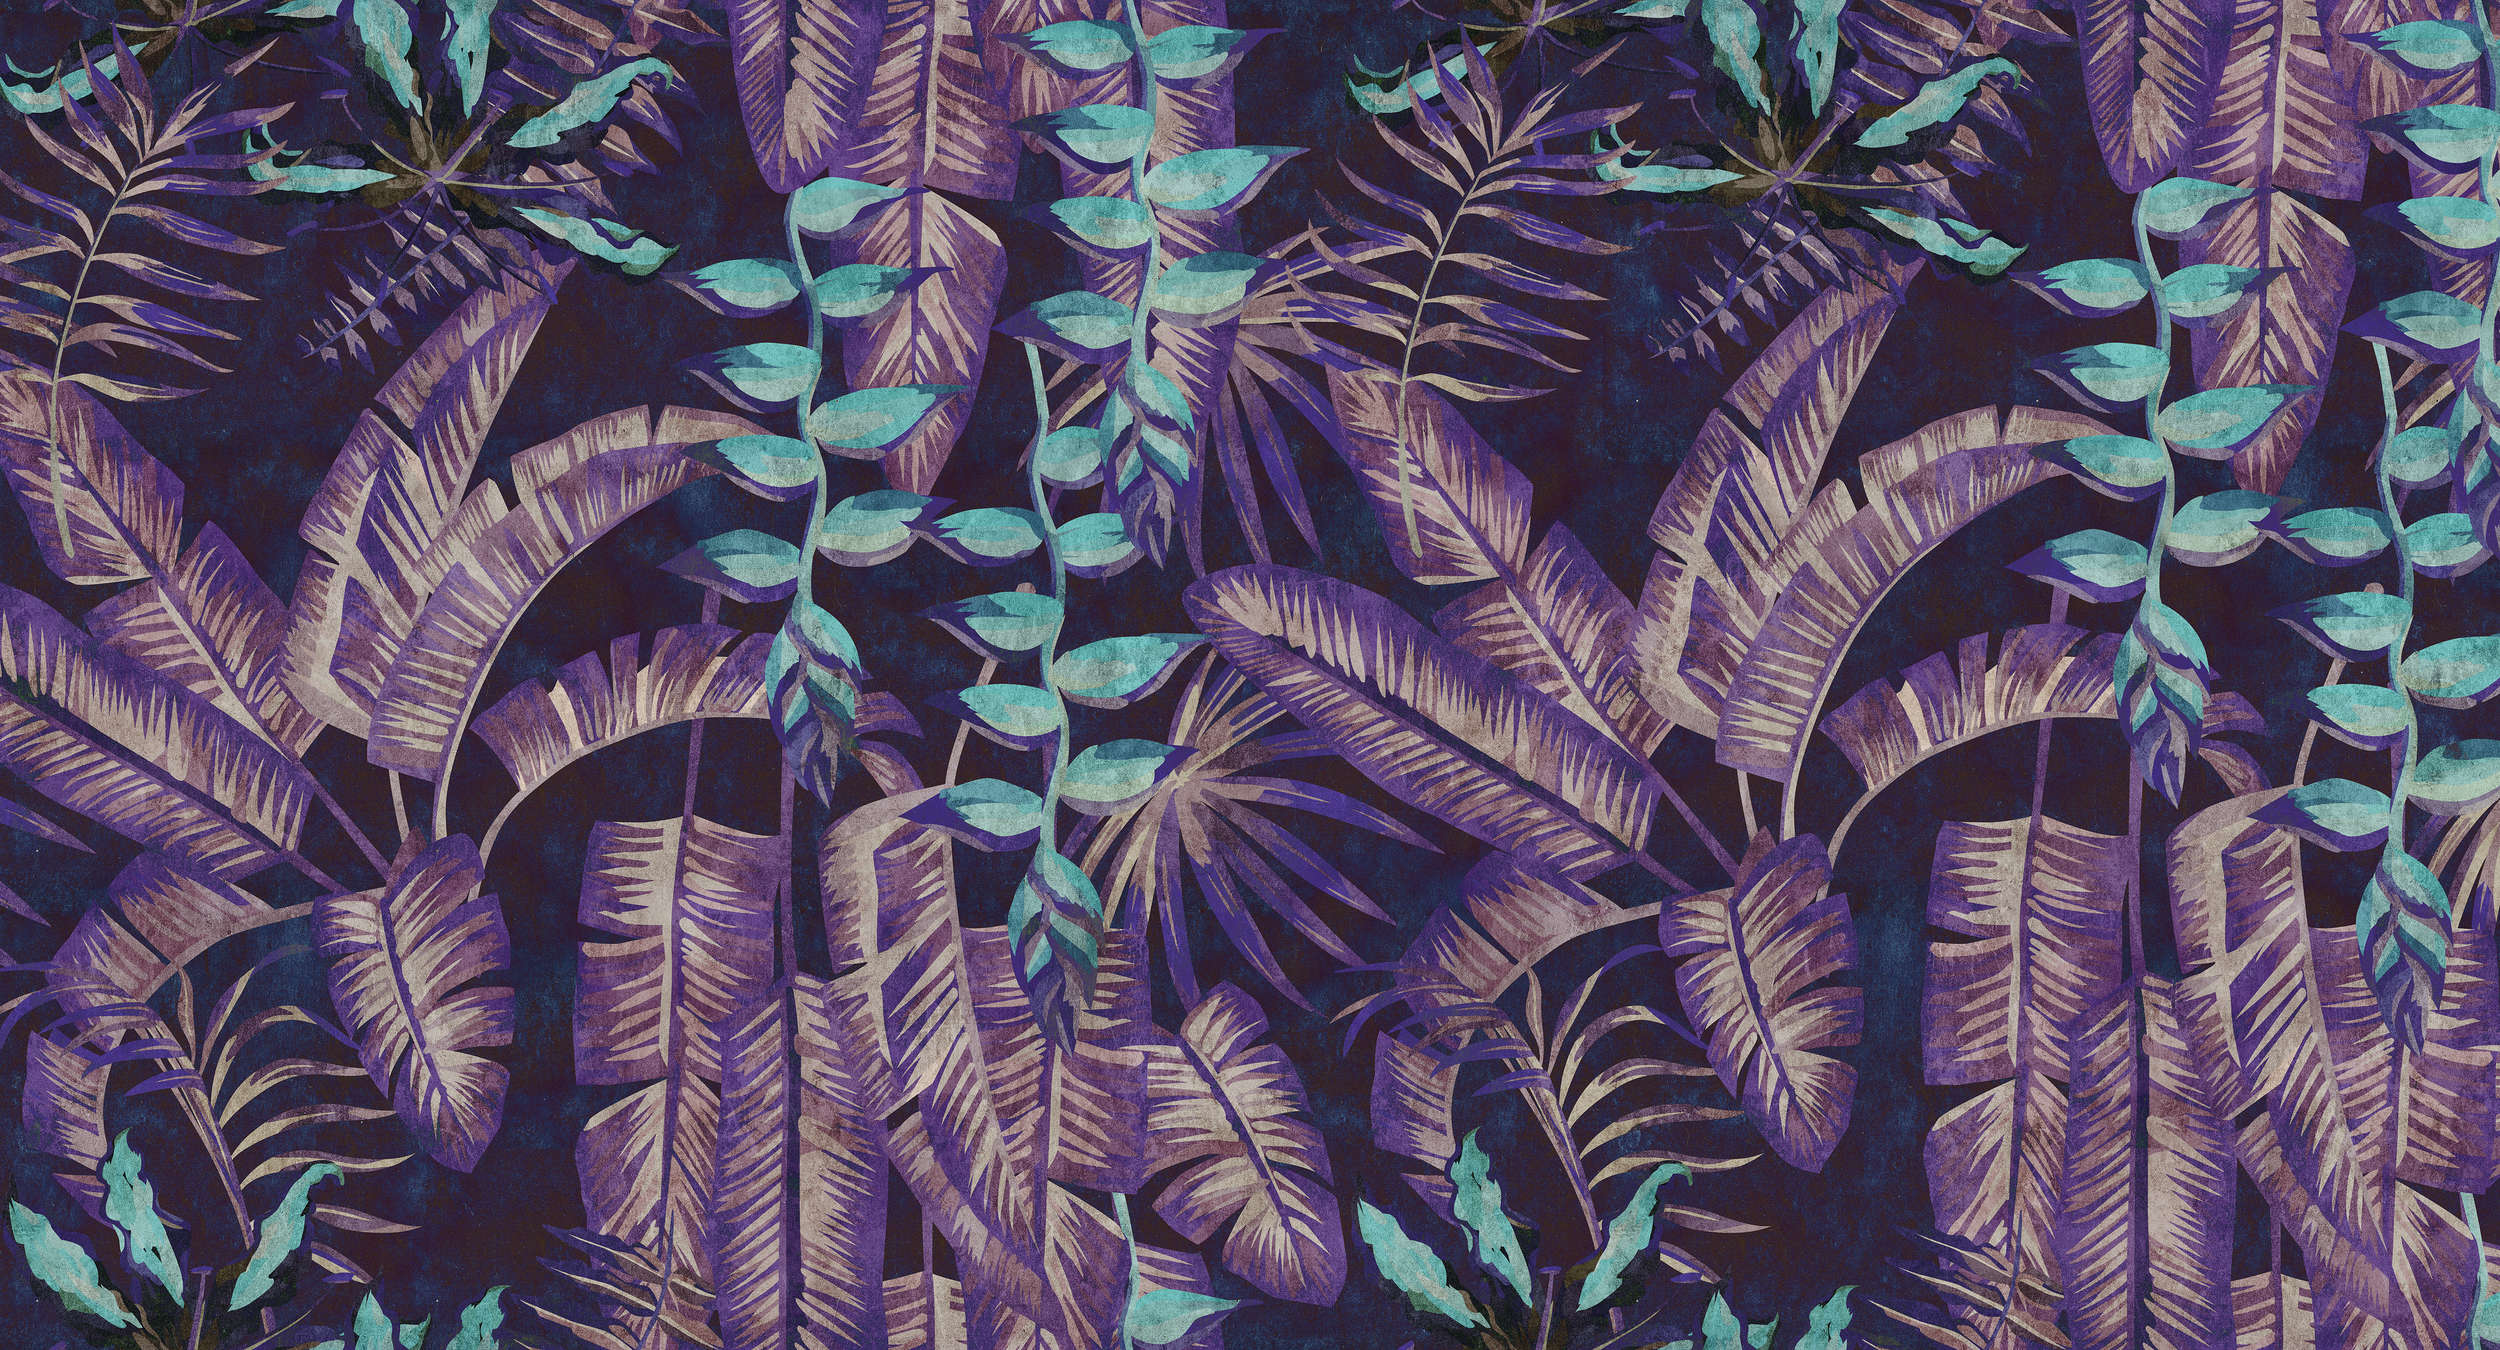             Tropicana 6 - papel pintado con impresión digital en estructura de papel secante con motivo selvático - no tejido liso turquesa, violeta | nácar
        